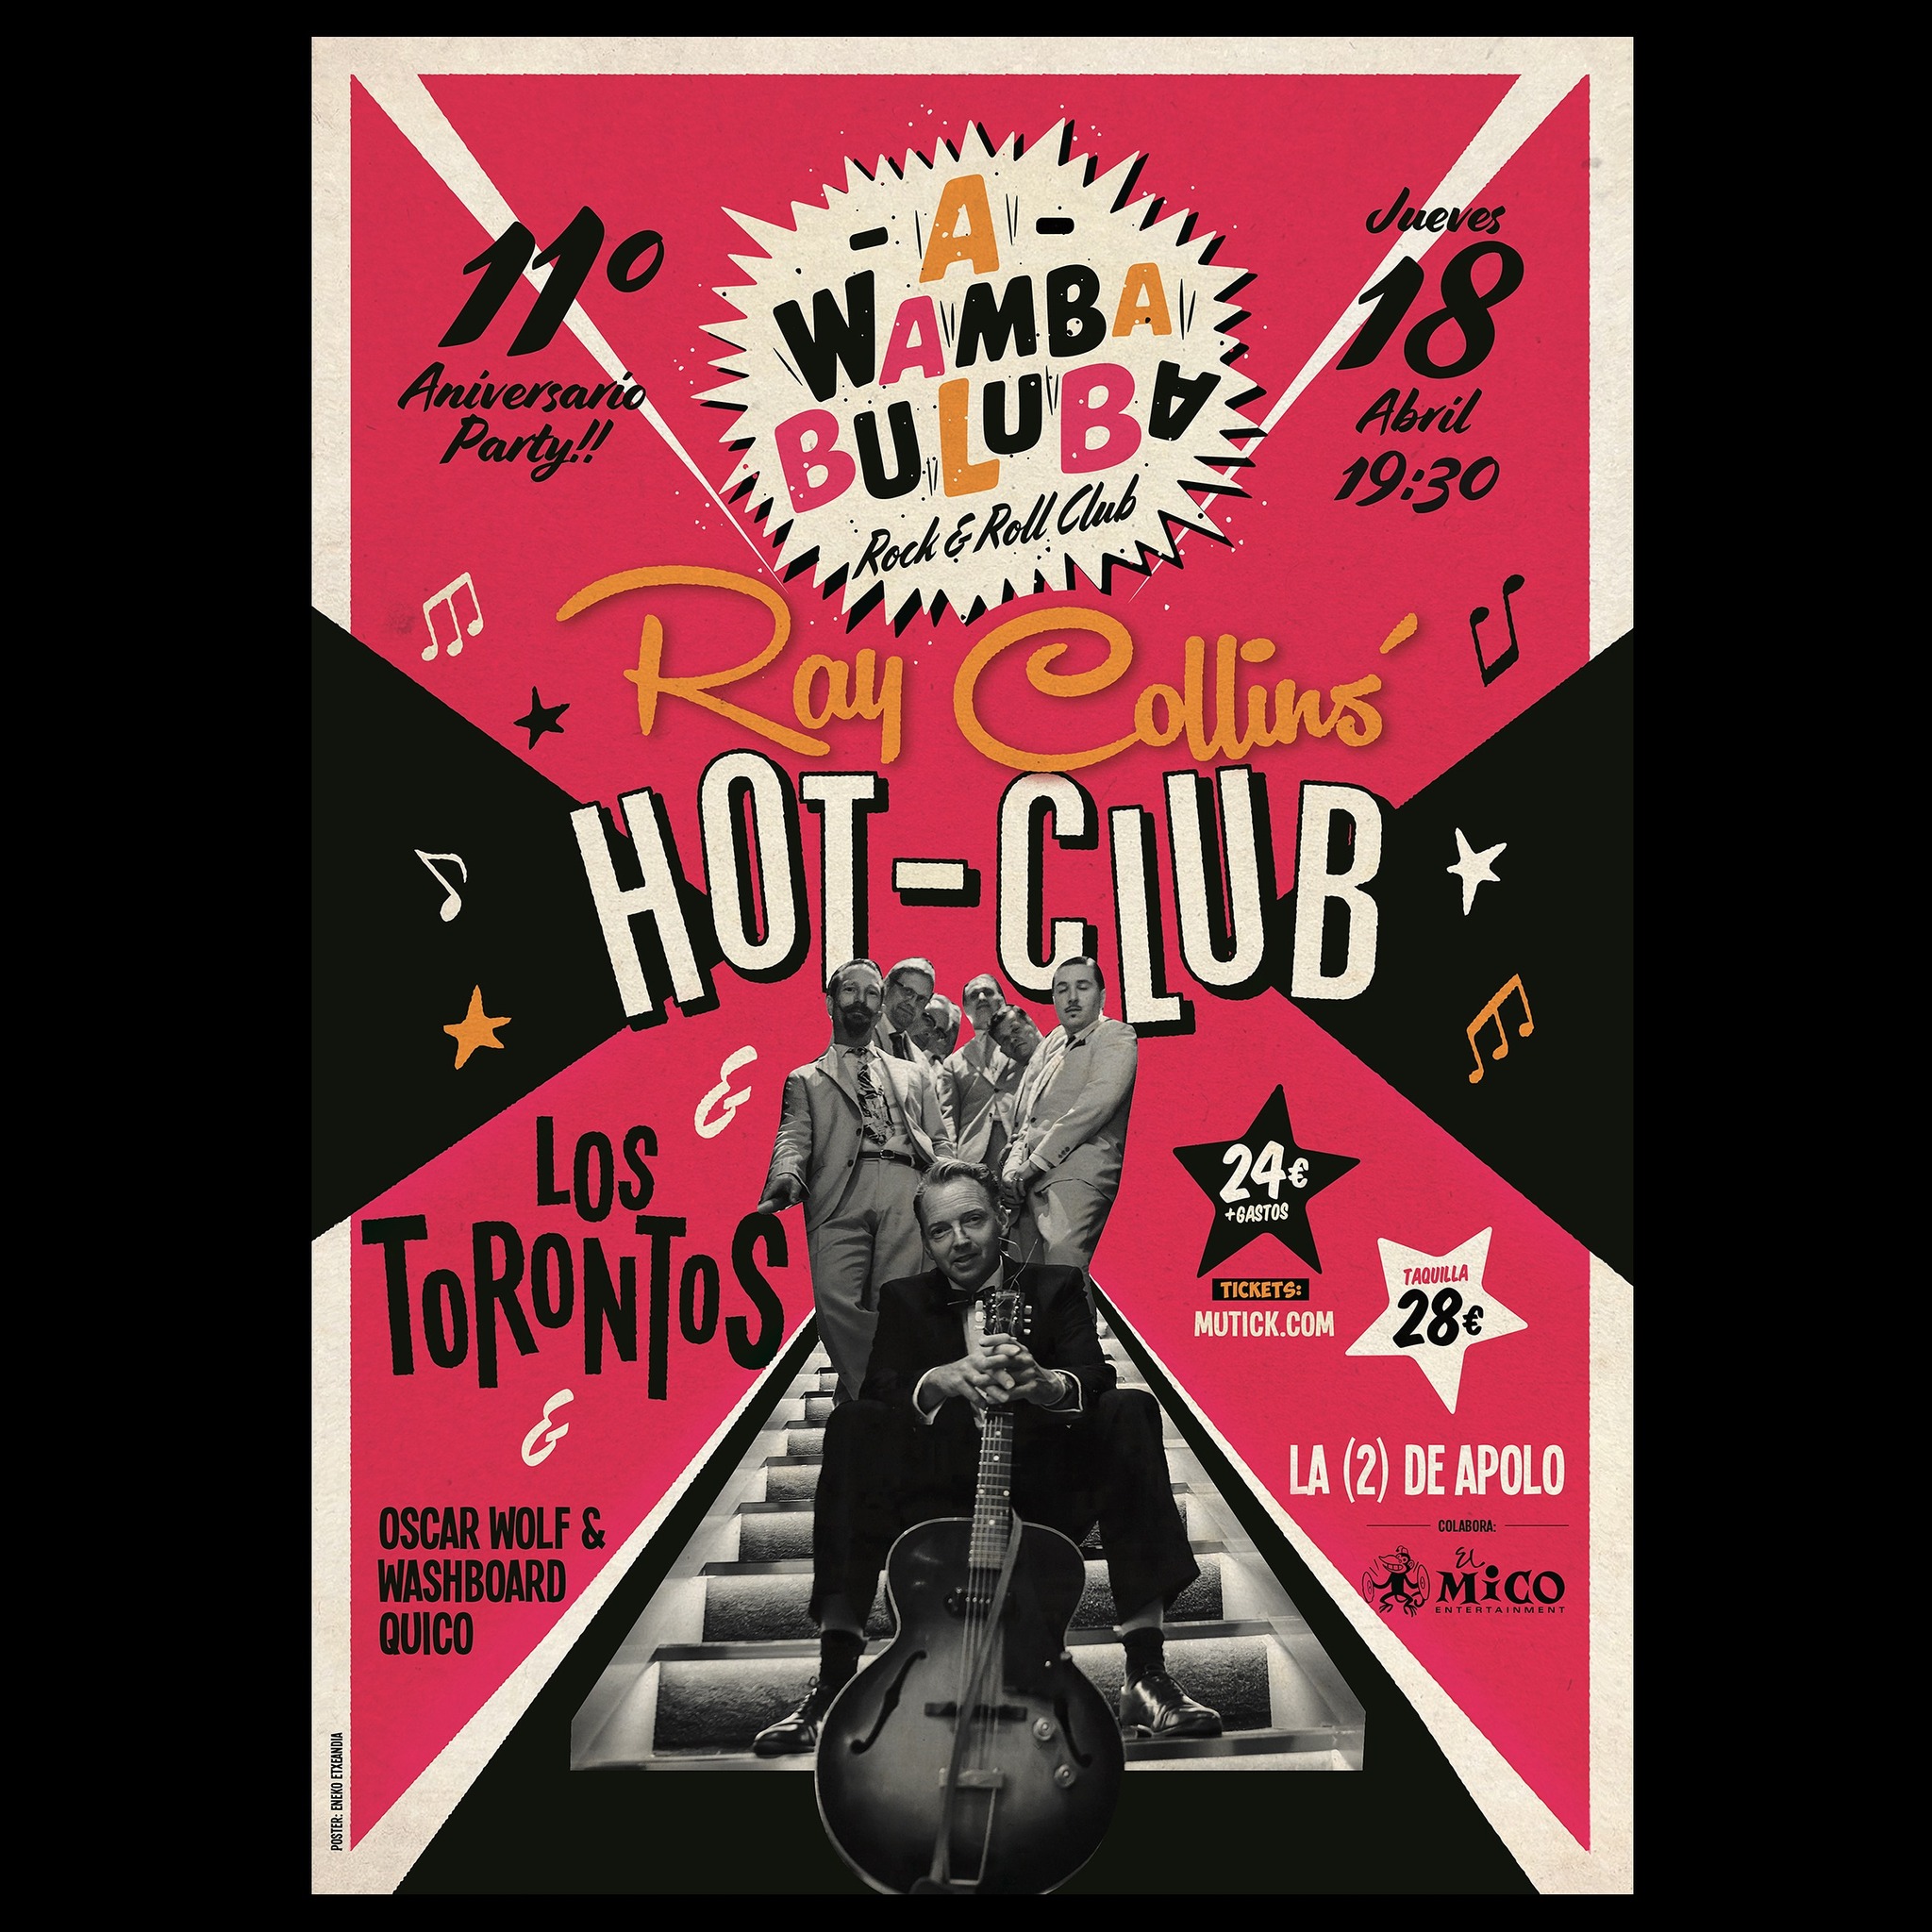 Ray Collins Hot Club + Los Torontos en Barcelona - Mutick